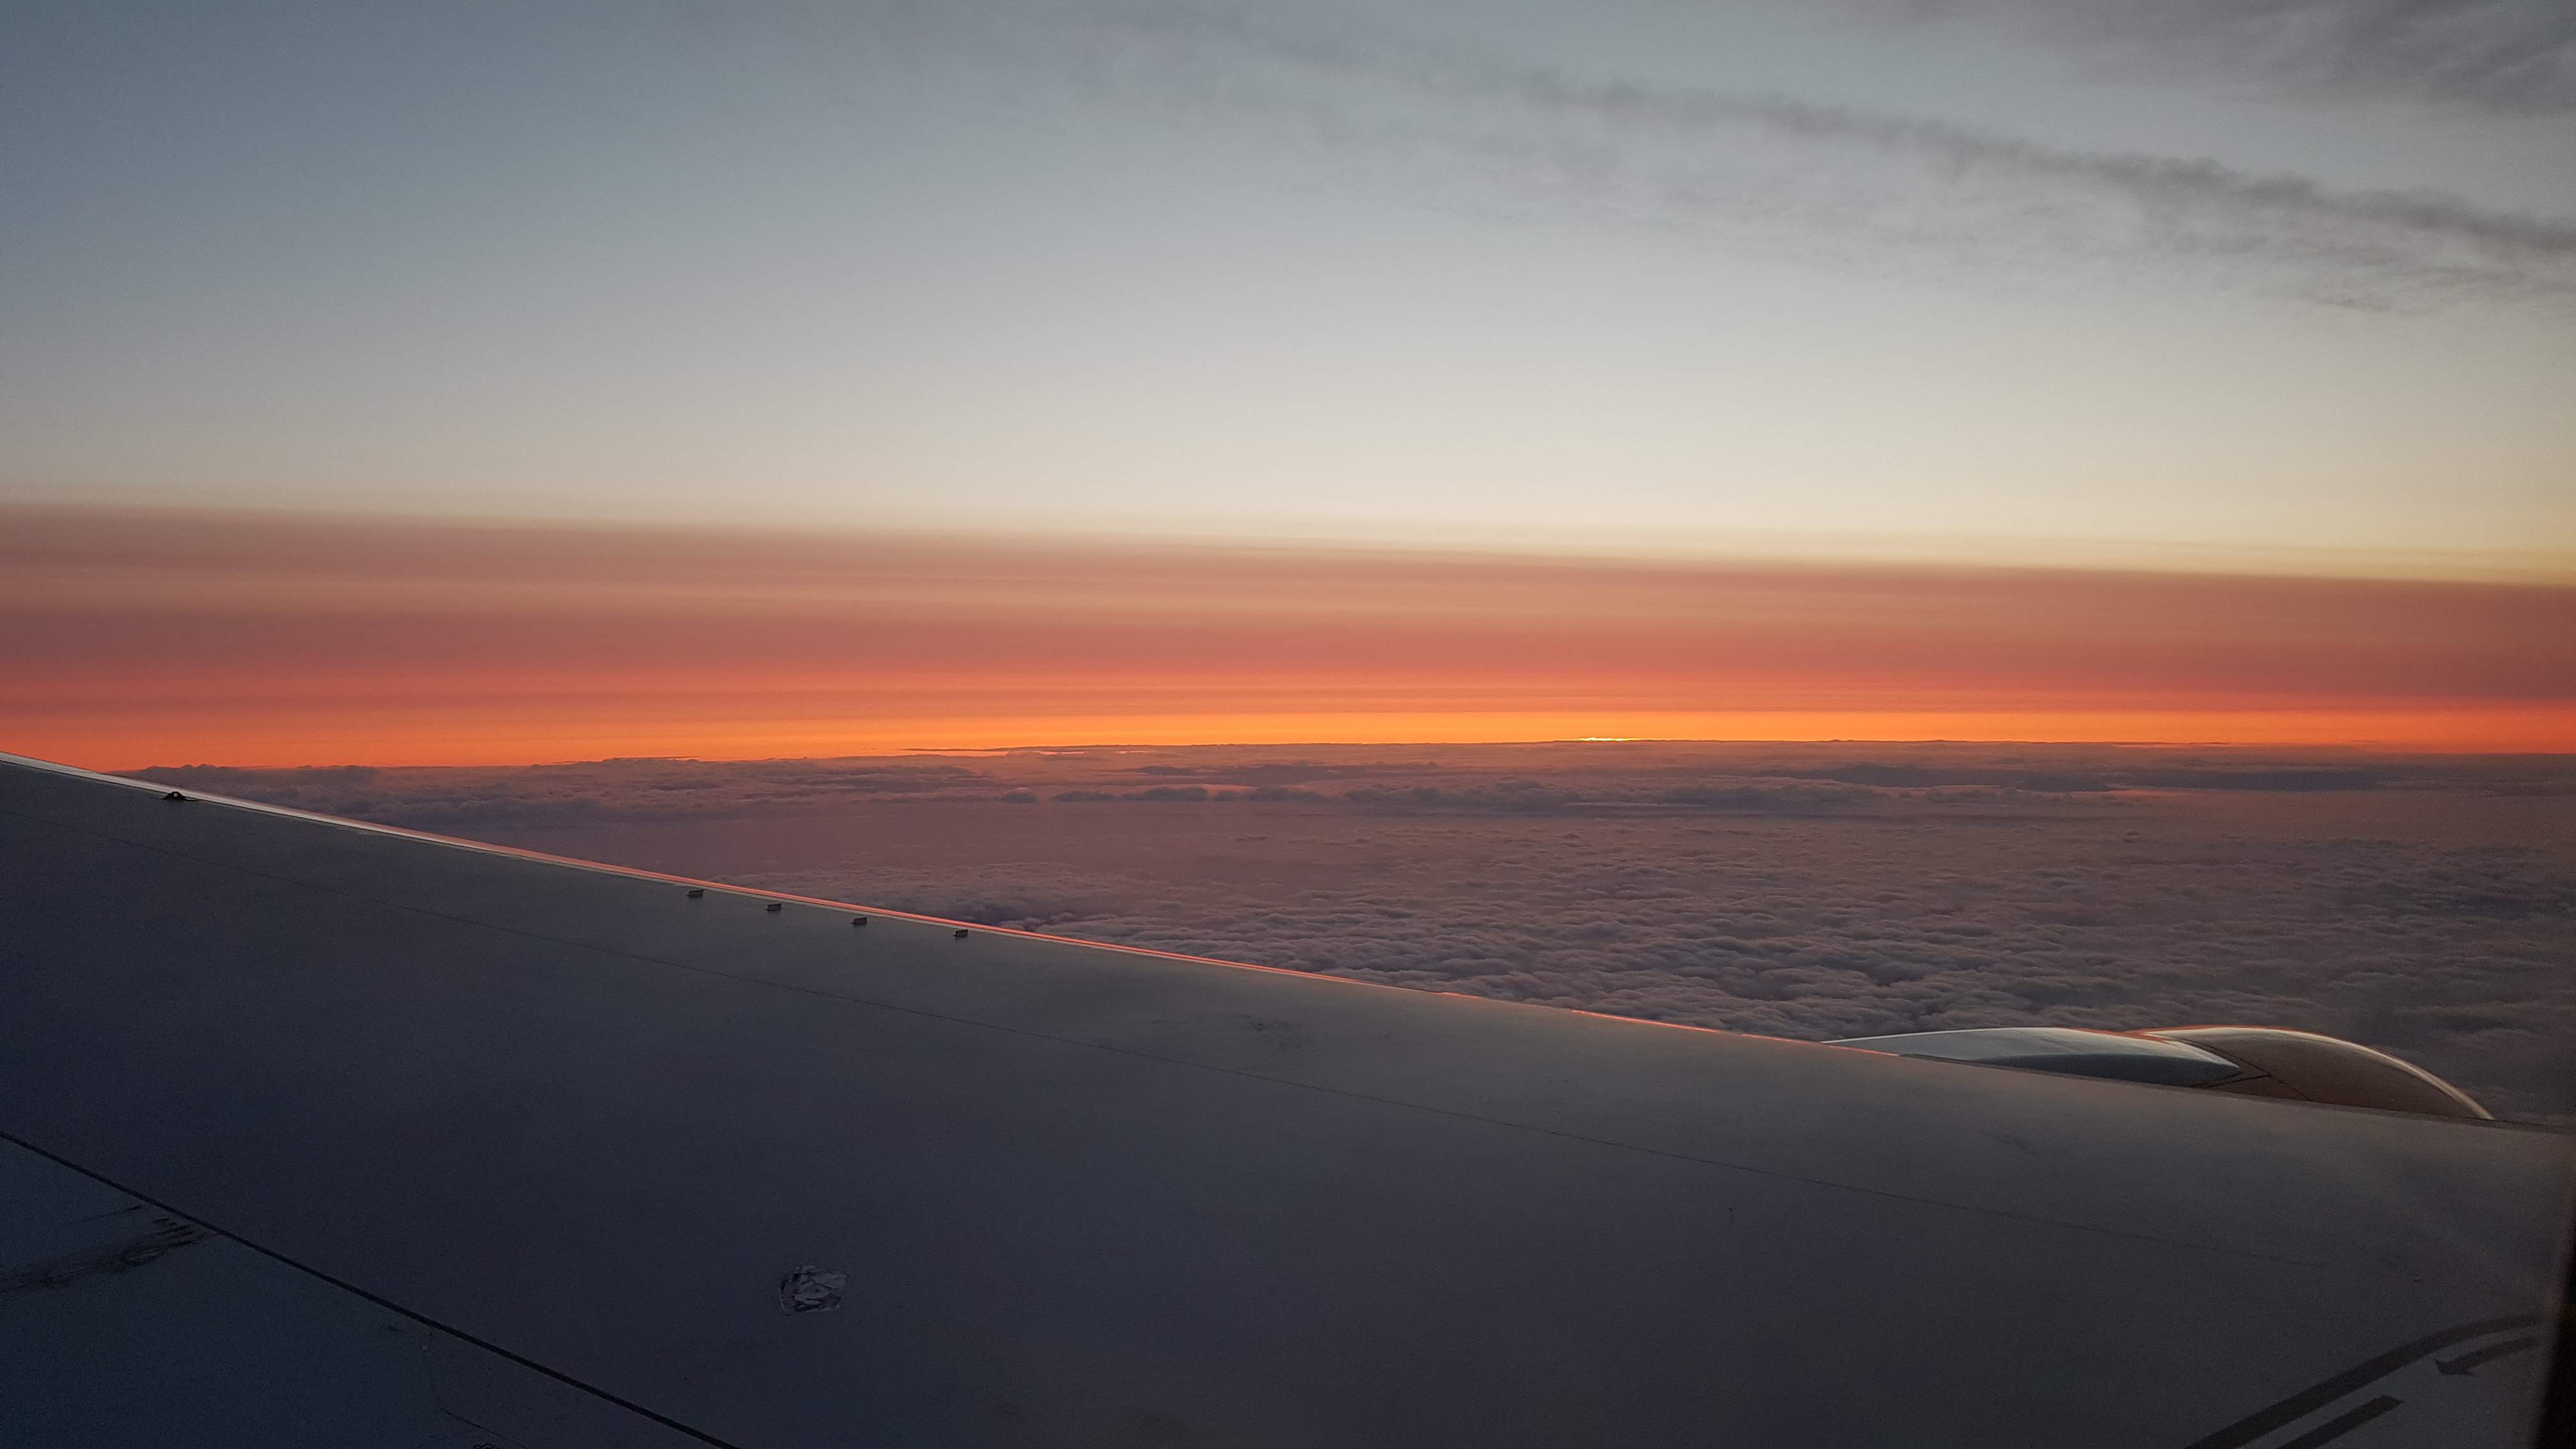 Sunset over the Atlantic Ocean